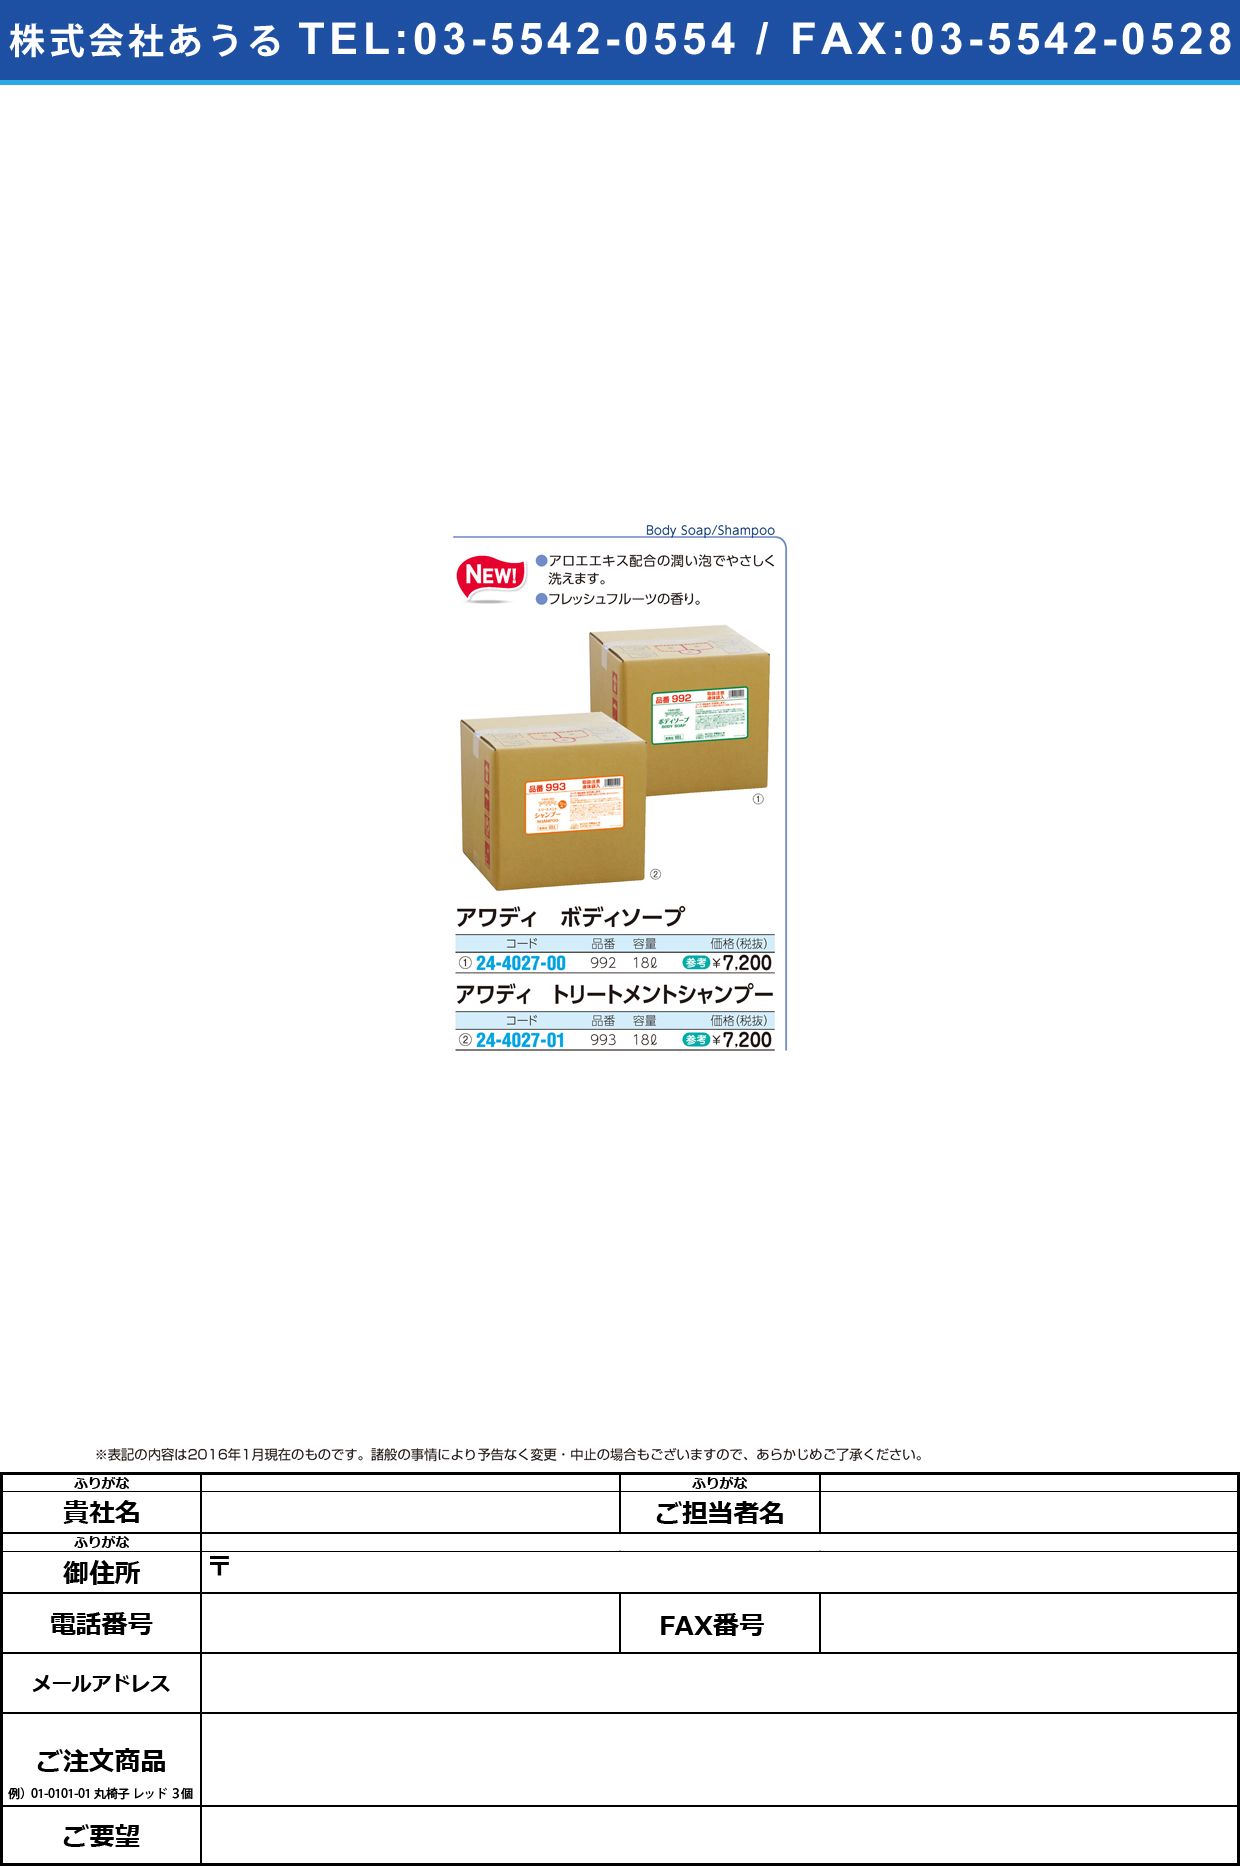 アワディ ボディソープ     ｱﾜﾃﾞｨﾎﾞﾃﾞｨｿｰﾌﾟ 992(18L)【1箱単位】(24-4027-00)